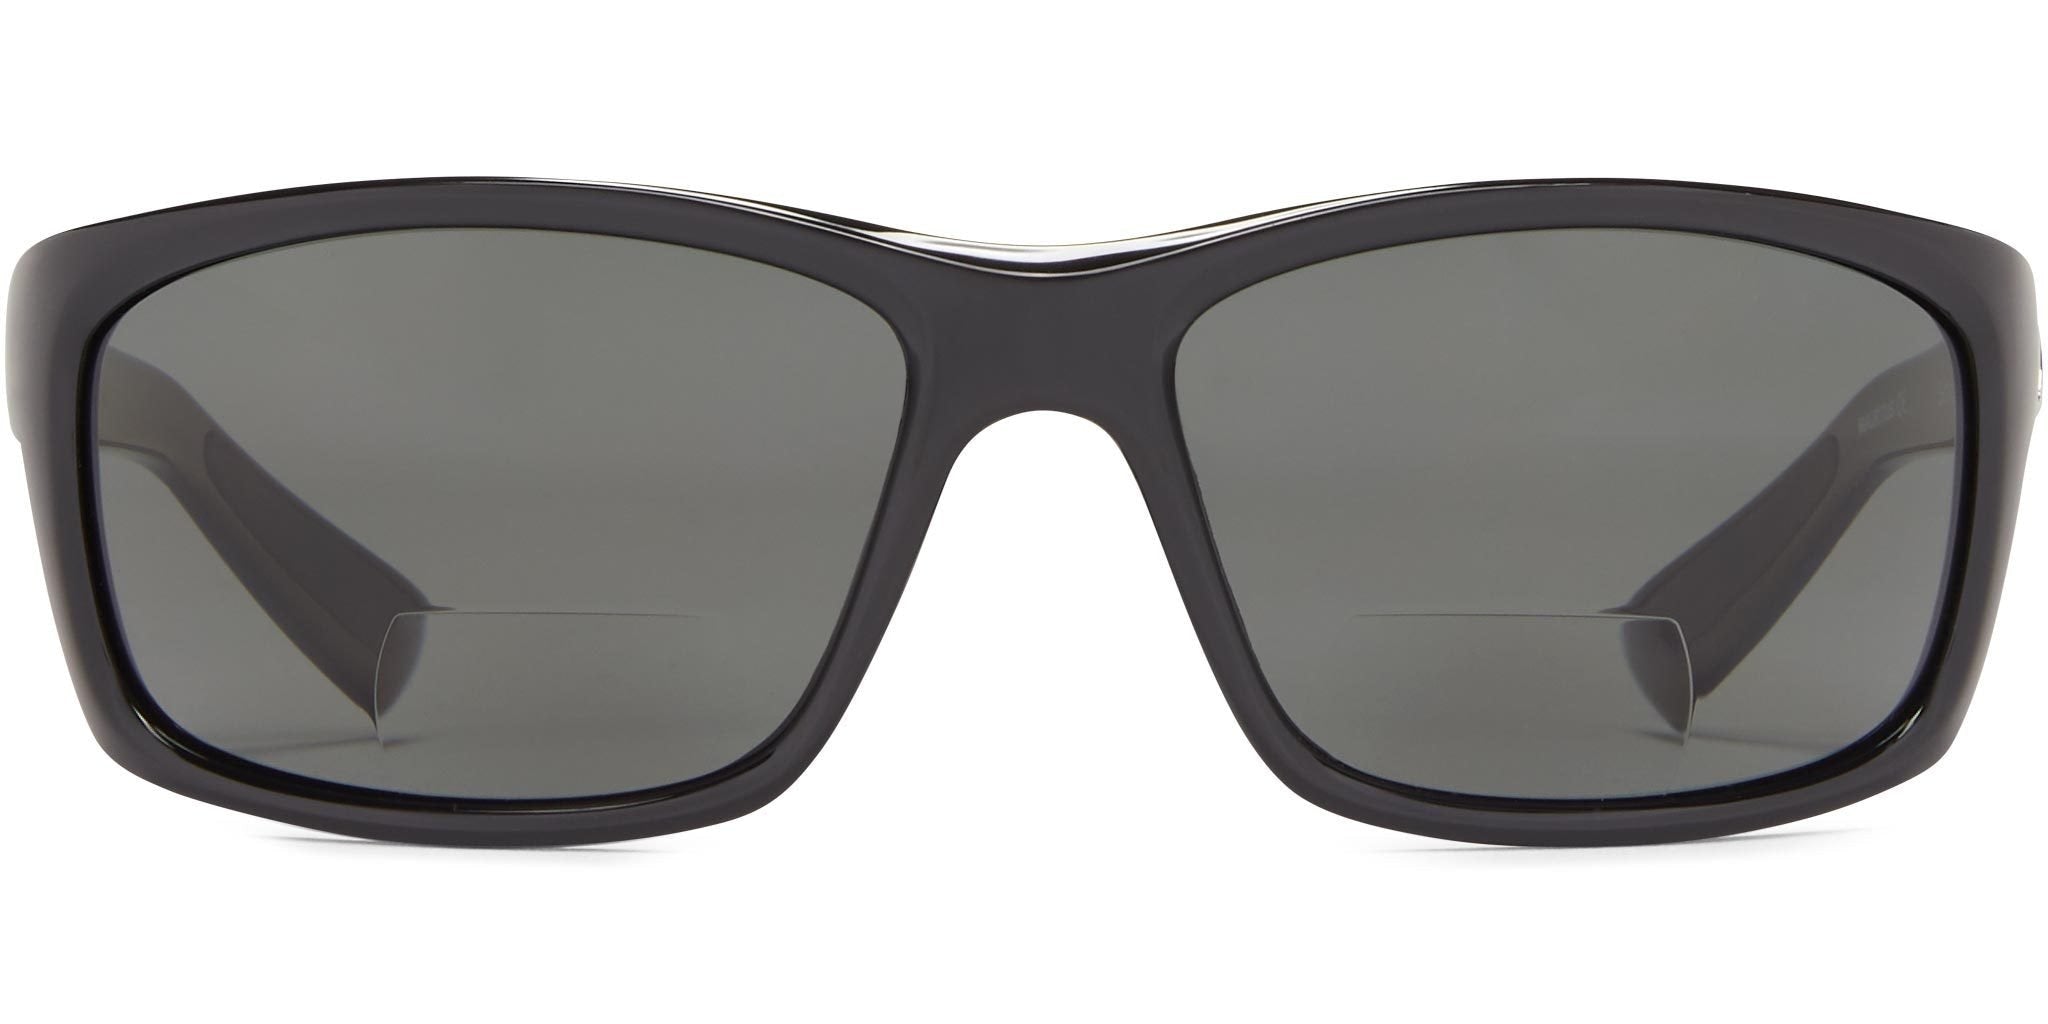 2 Pc Bifocal Vision Reader Reading Glasses Sunglasses UV Black +2.00 S —  AllTopBargains